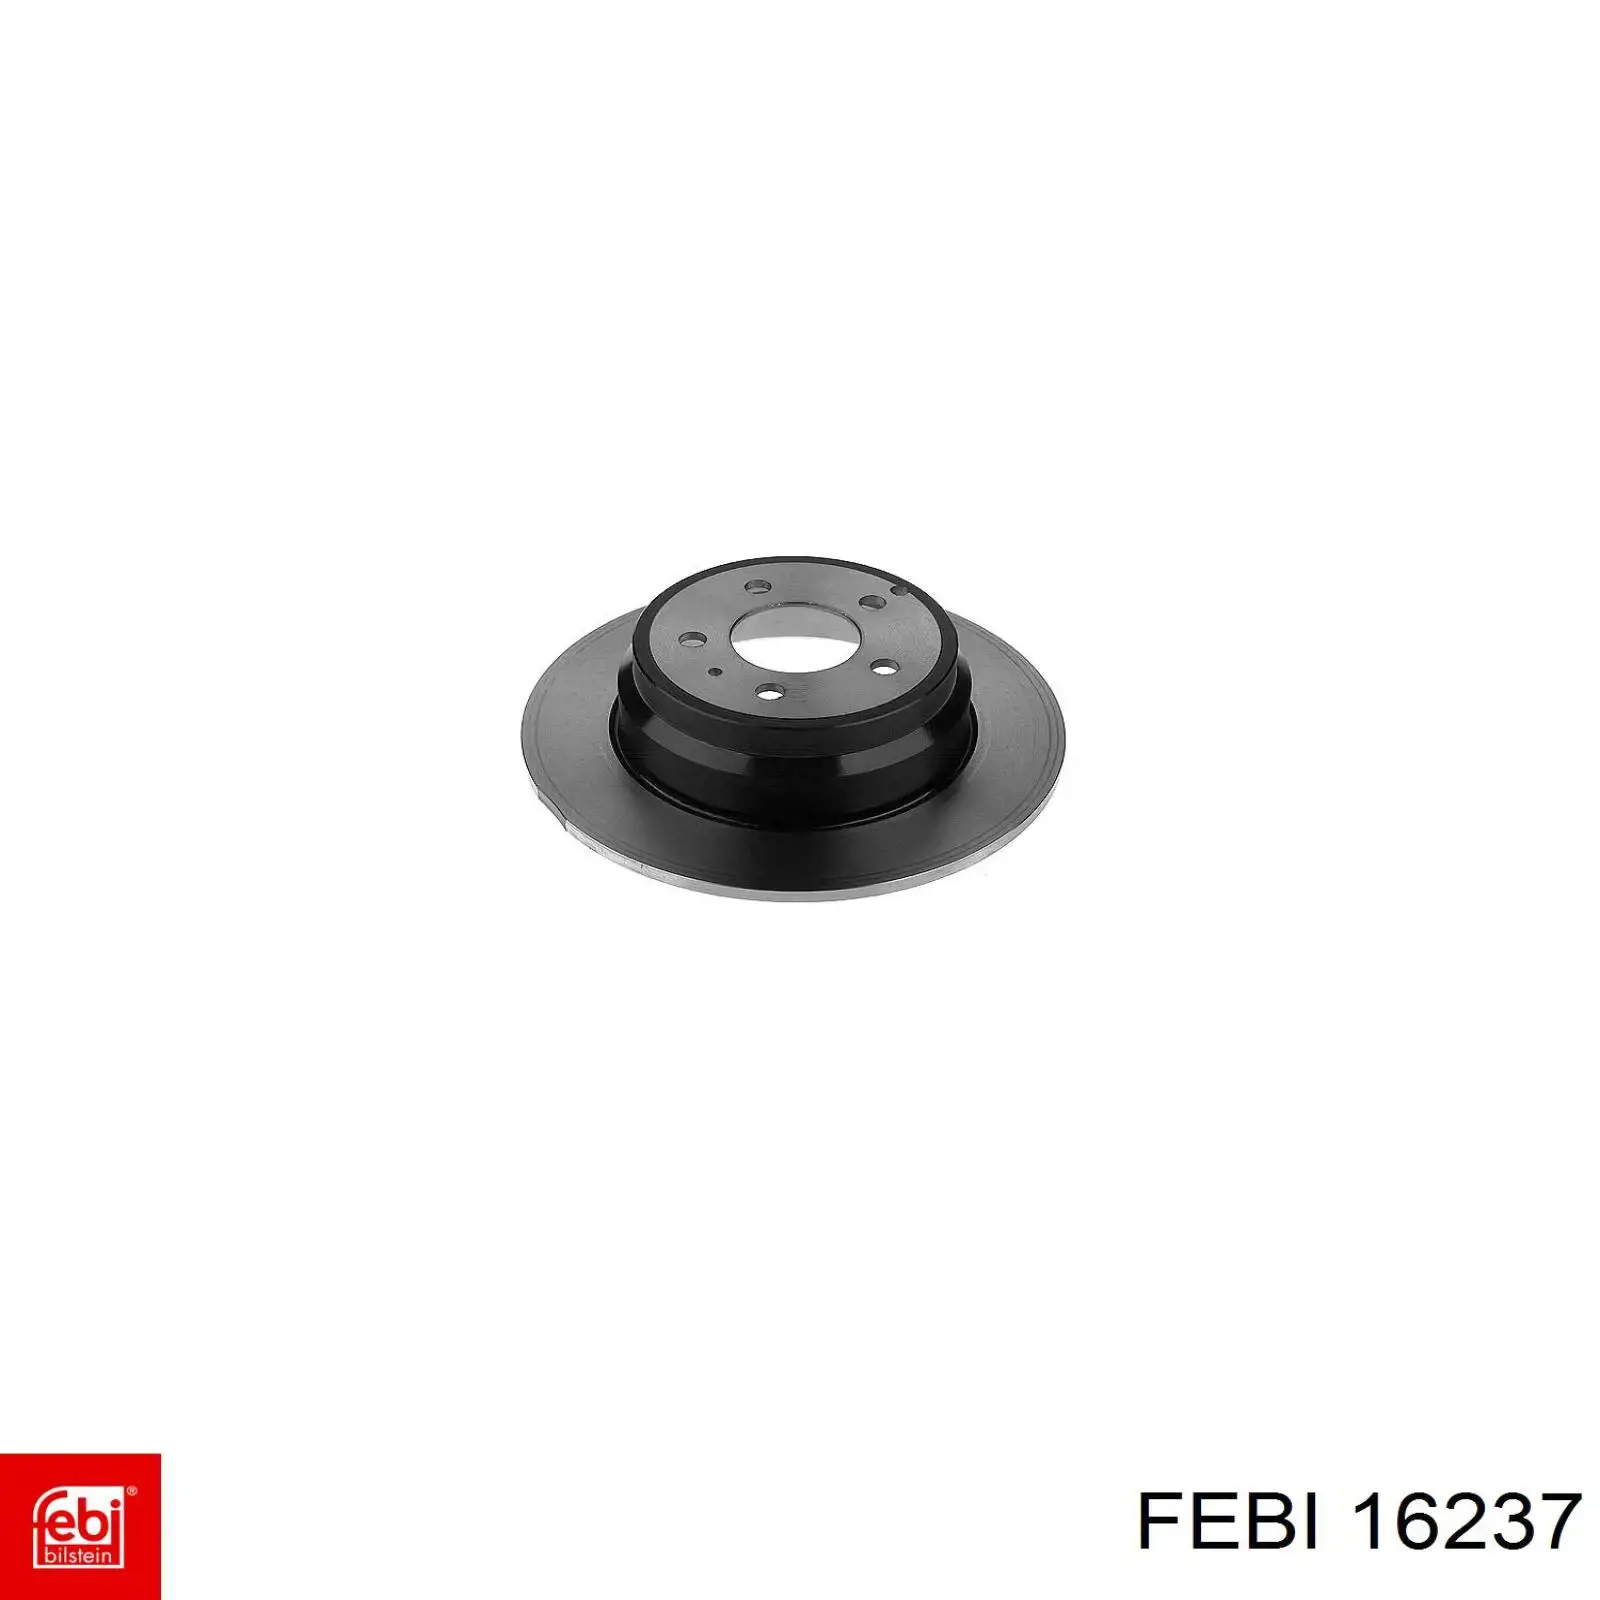 16237 Febi колодки тормозные передние дисковые